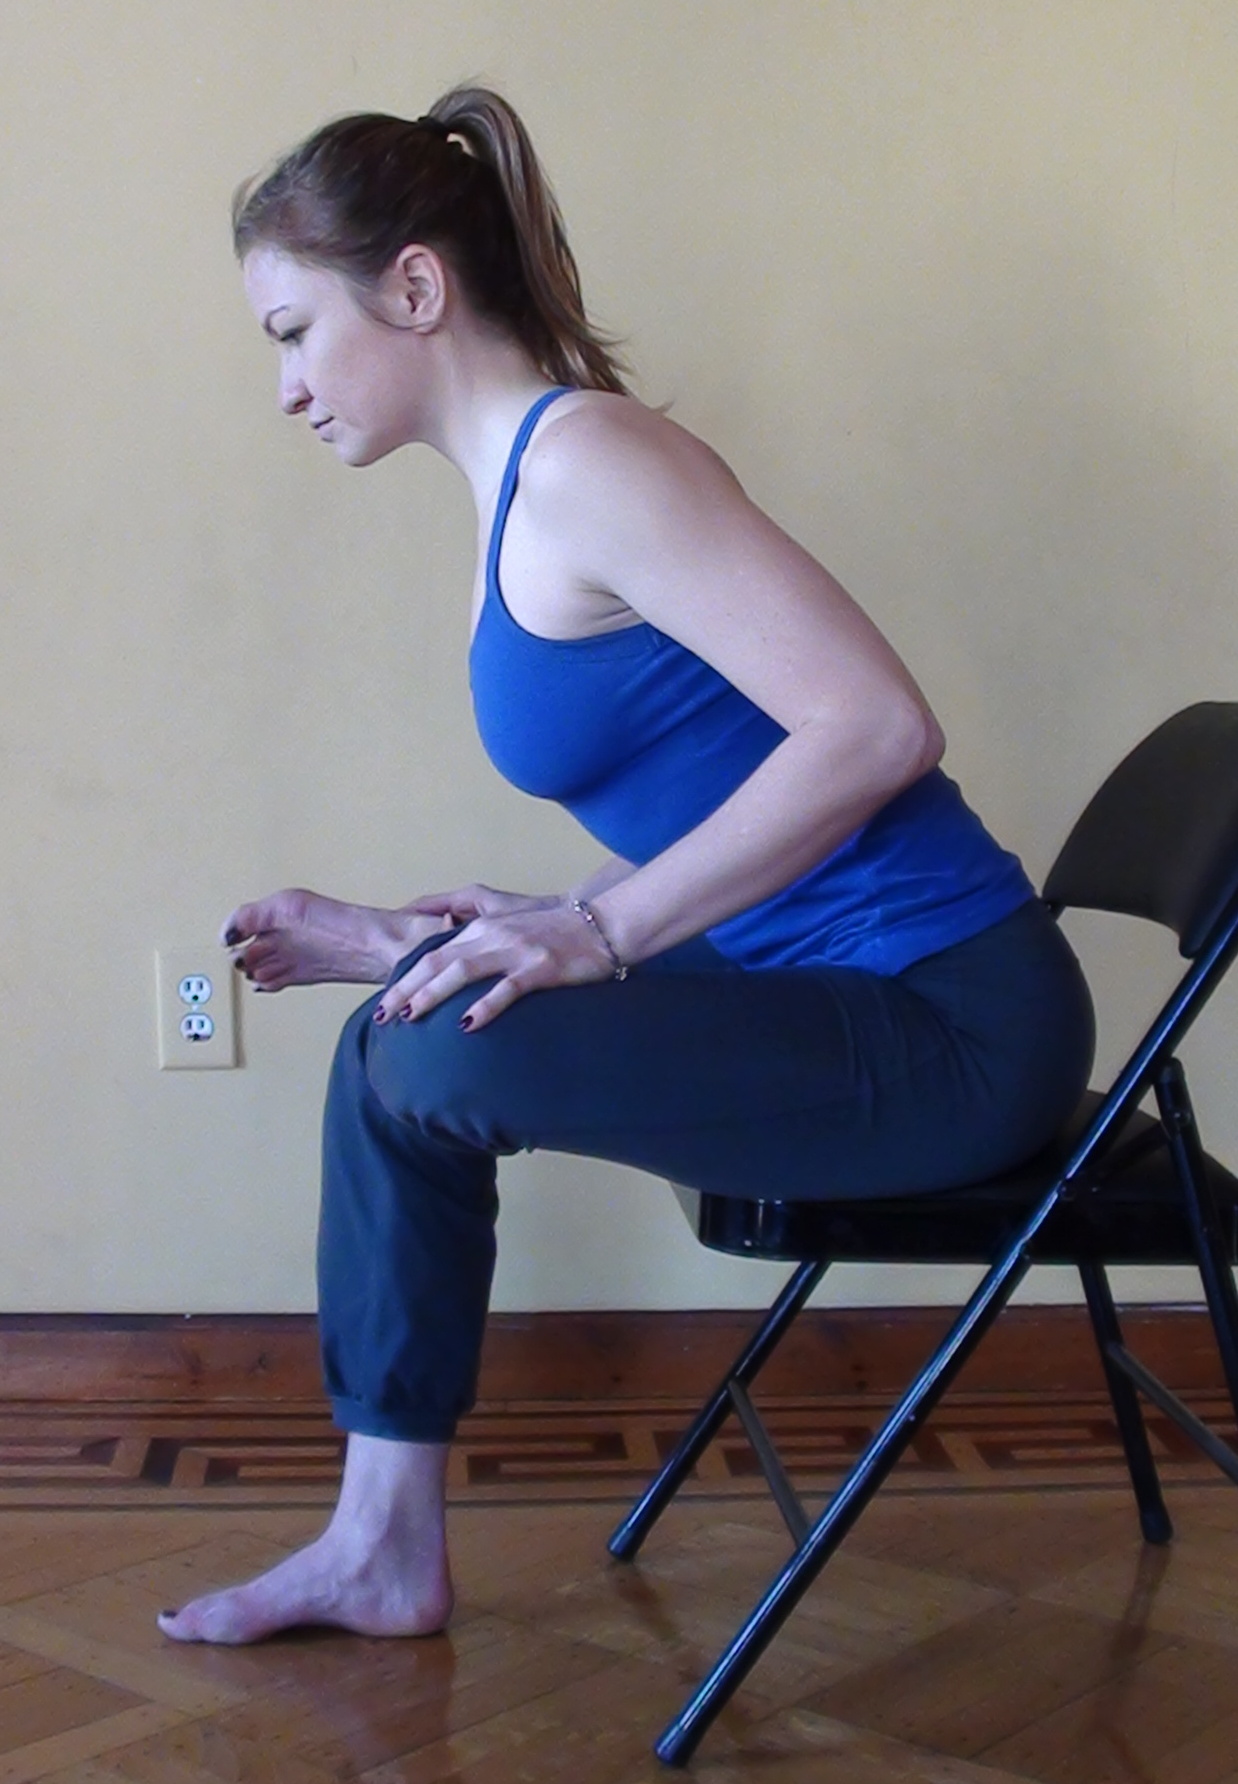 Piriformis Stretch Sitting On A Chair